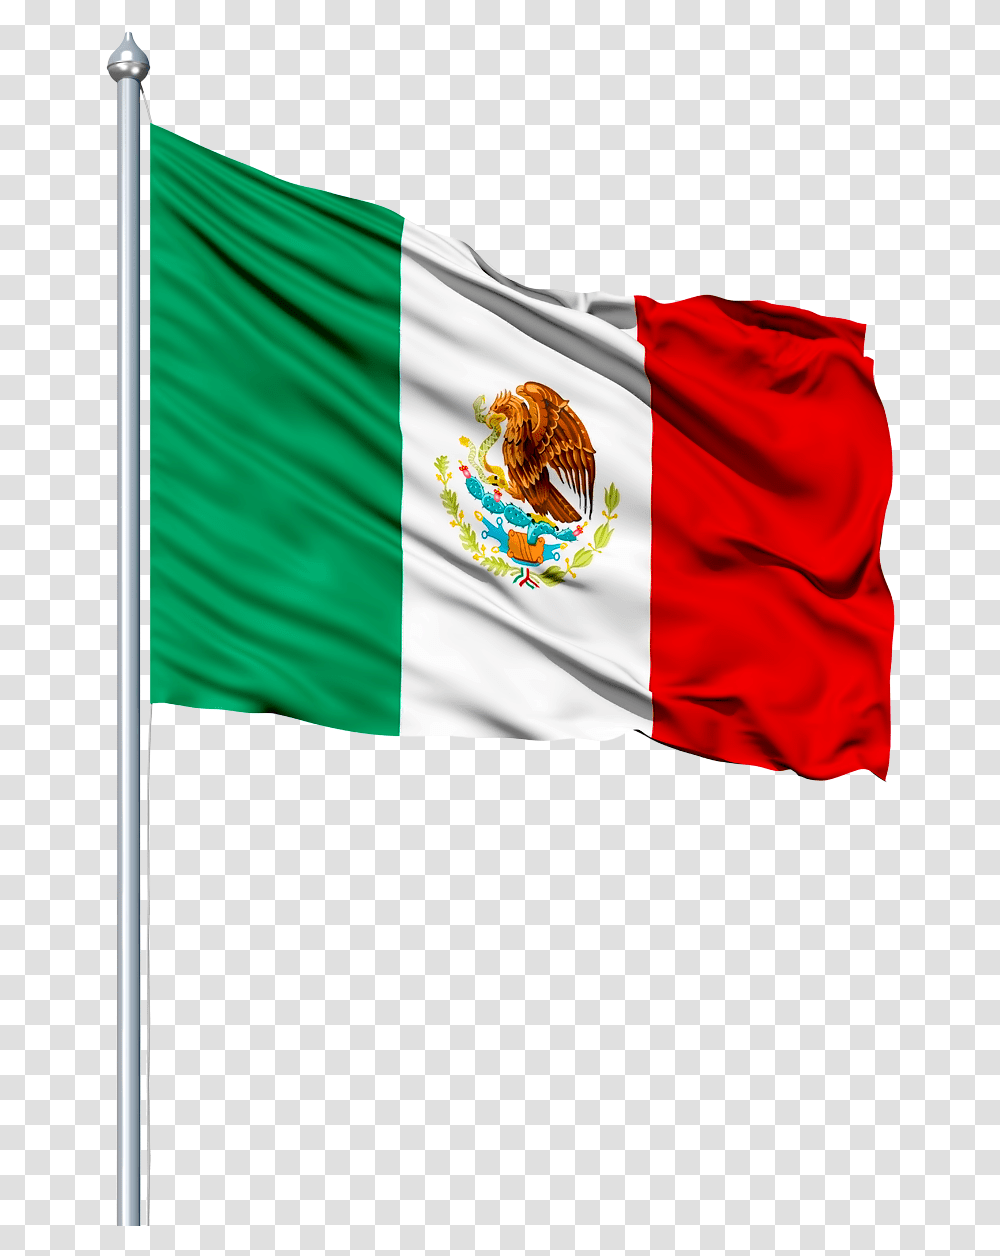 Bandera De Mexico Flag, American Flag Transparent Png